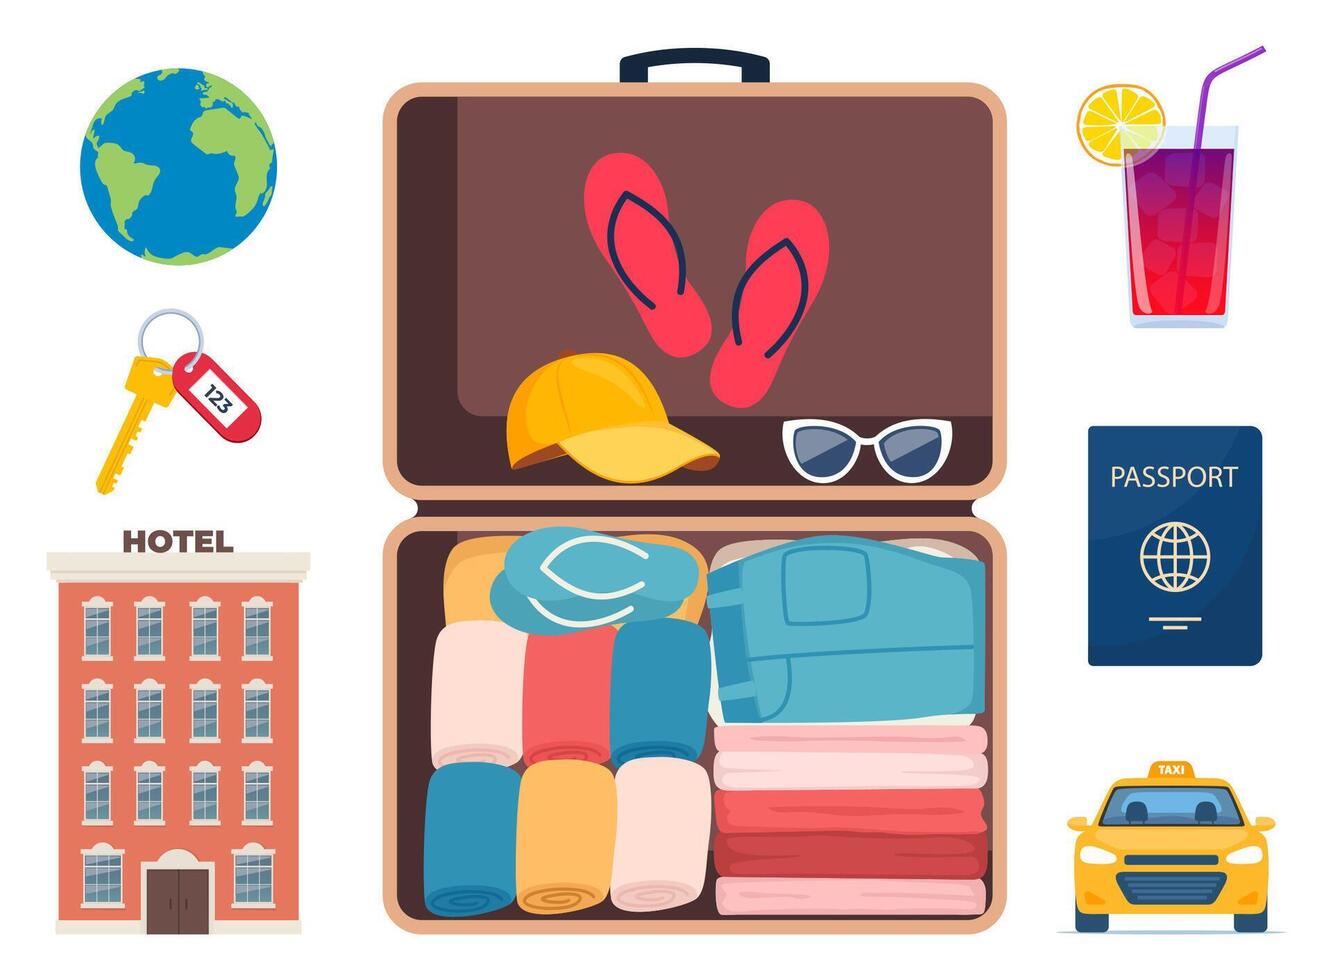 avontuur toerisme, reizen Buitenland, zomer vakantie reis decoratief ontwerp elementen. reeks van reizen pictogrammen. vervoer, hotel, bagage, luchthaven. cocktail, palm. vector illustratie.